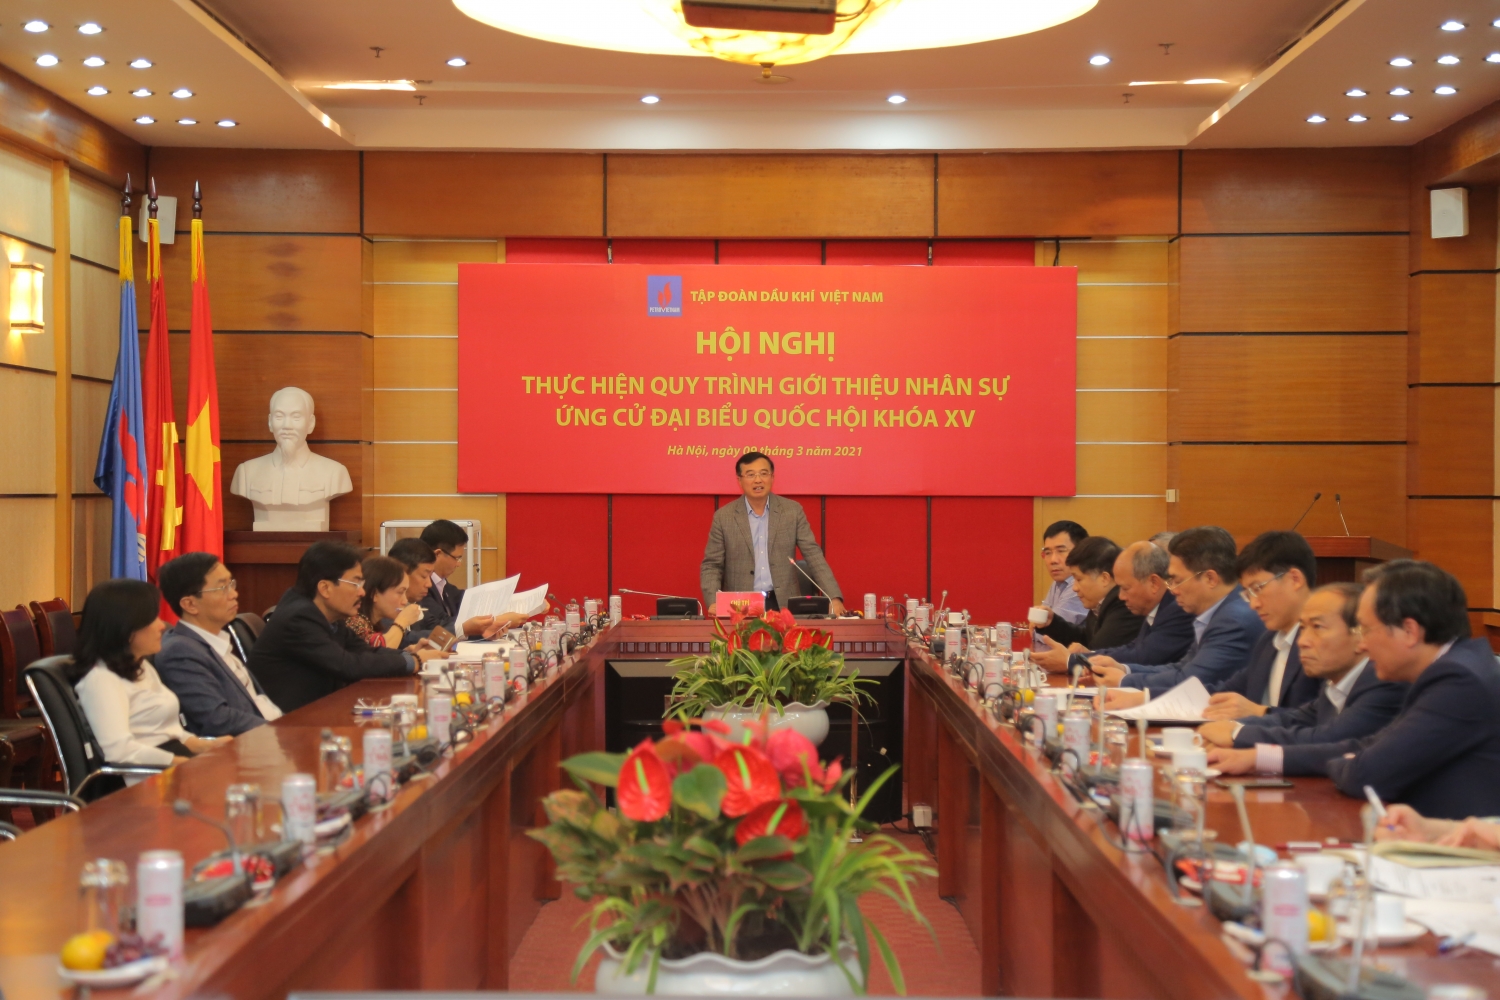 Petrovietnam giới thiệu Tổng Giám đốc Lê Mạnh Hùng ứng cử Đại biểu Quốc hội khoá XV